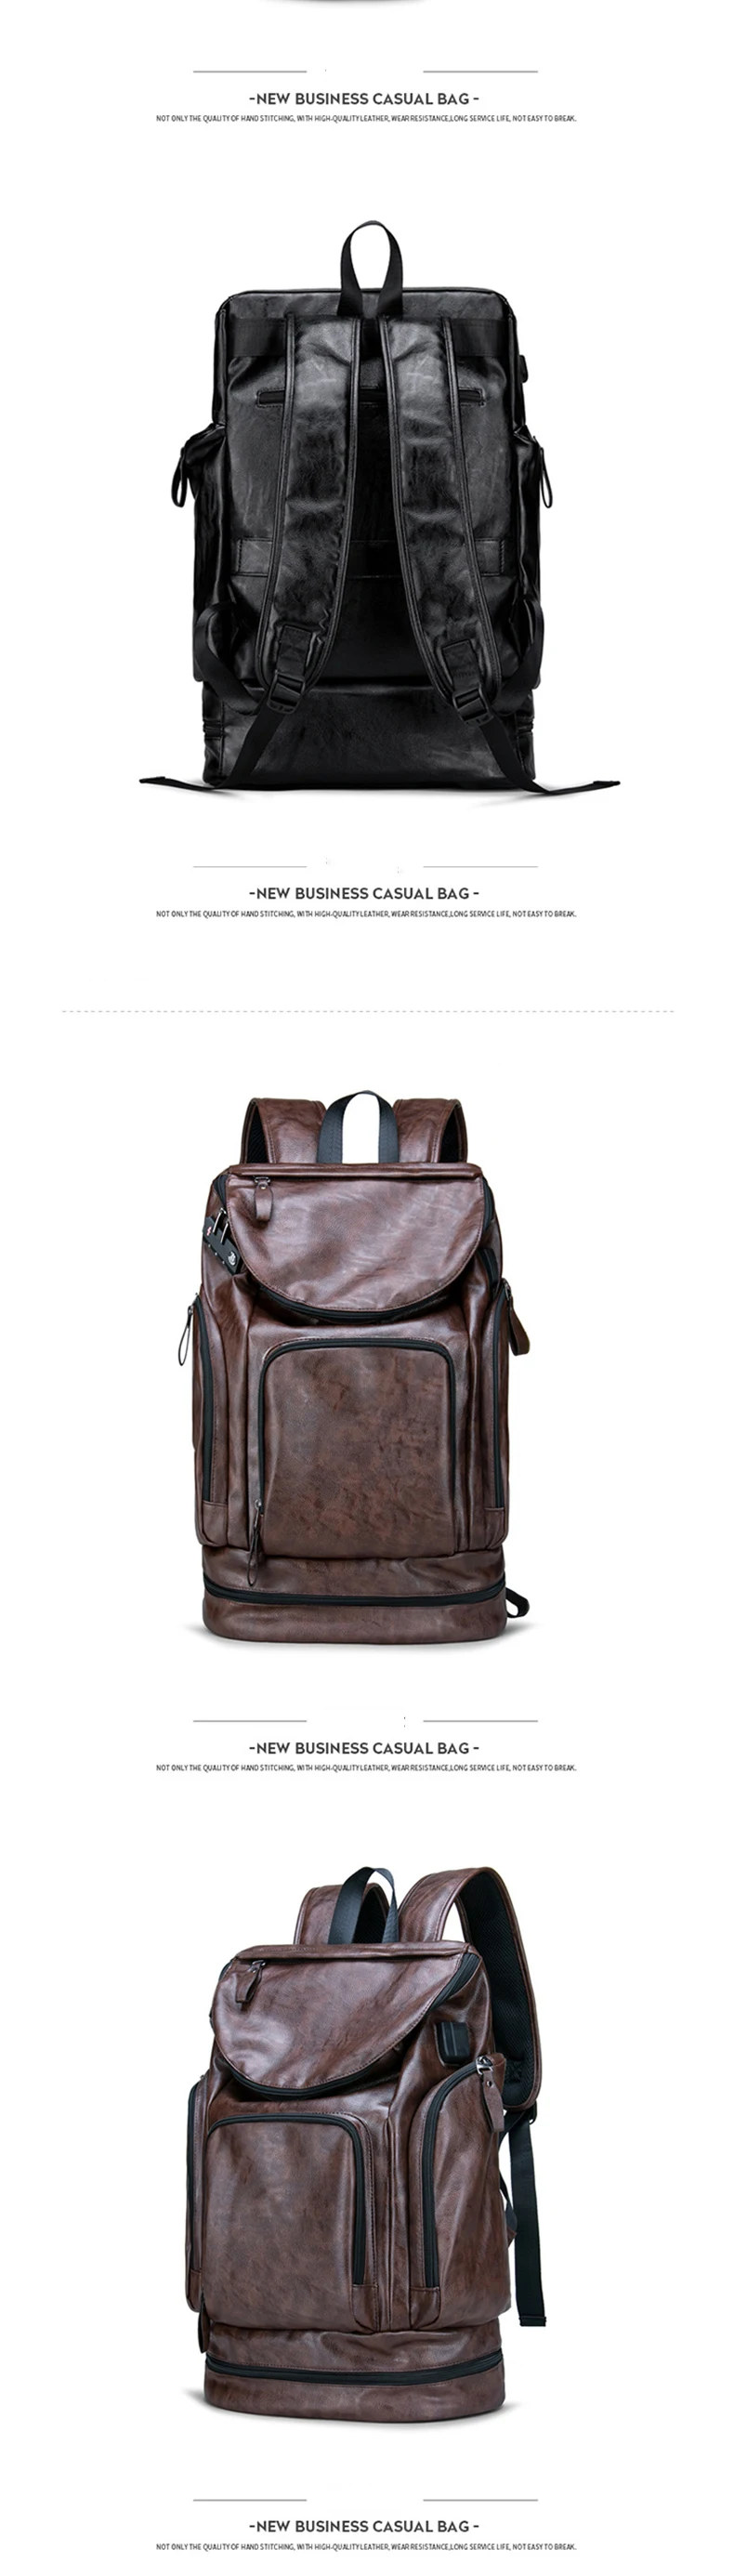 Для мужчин черный рюкзак многофункциональный коричневые сумки на плечо дорожная сумка Для Мужчин's Бизнес мешок для хранения с зарядка через usb рюкзак